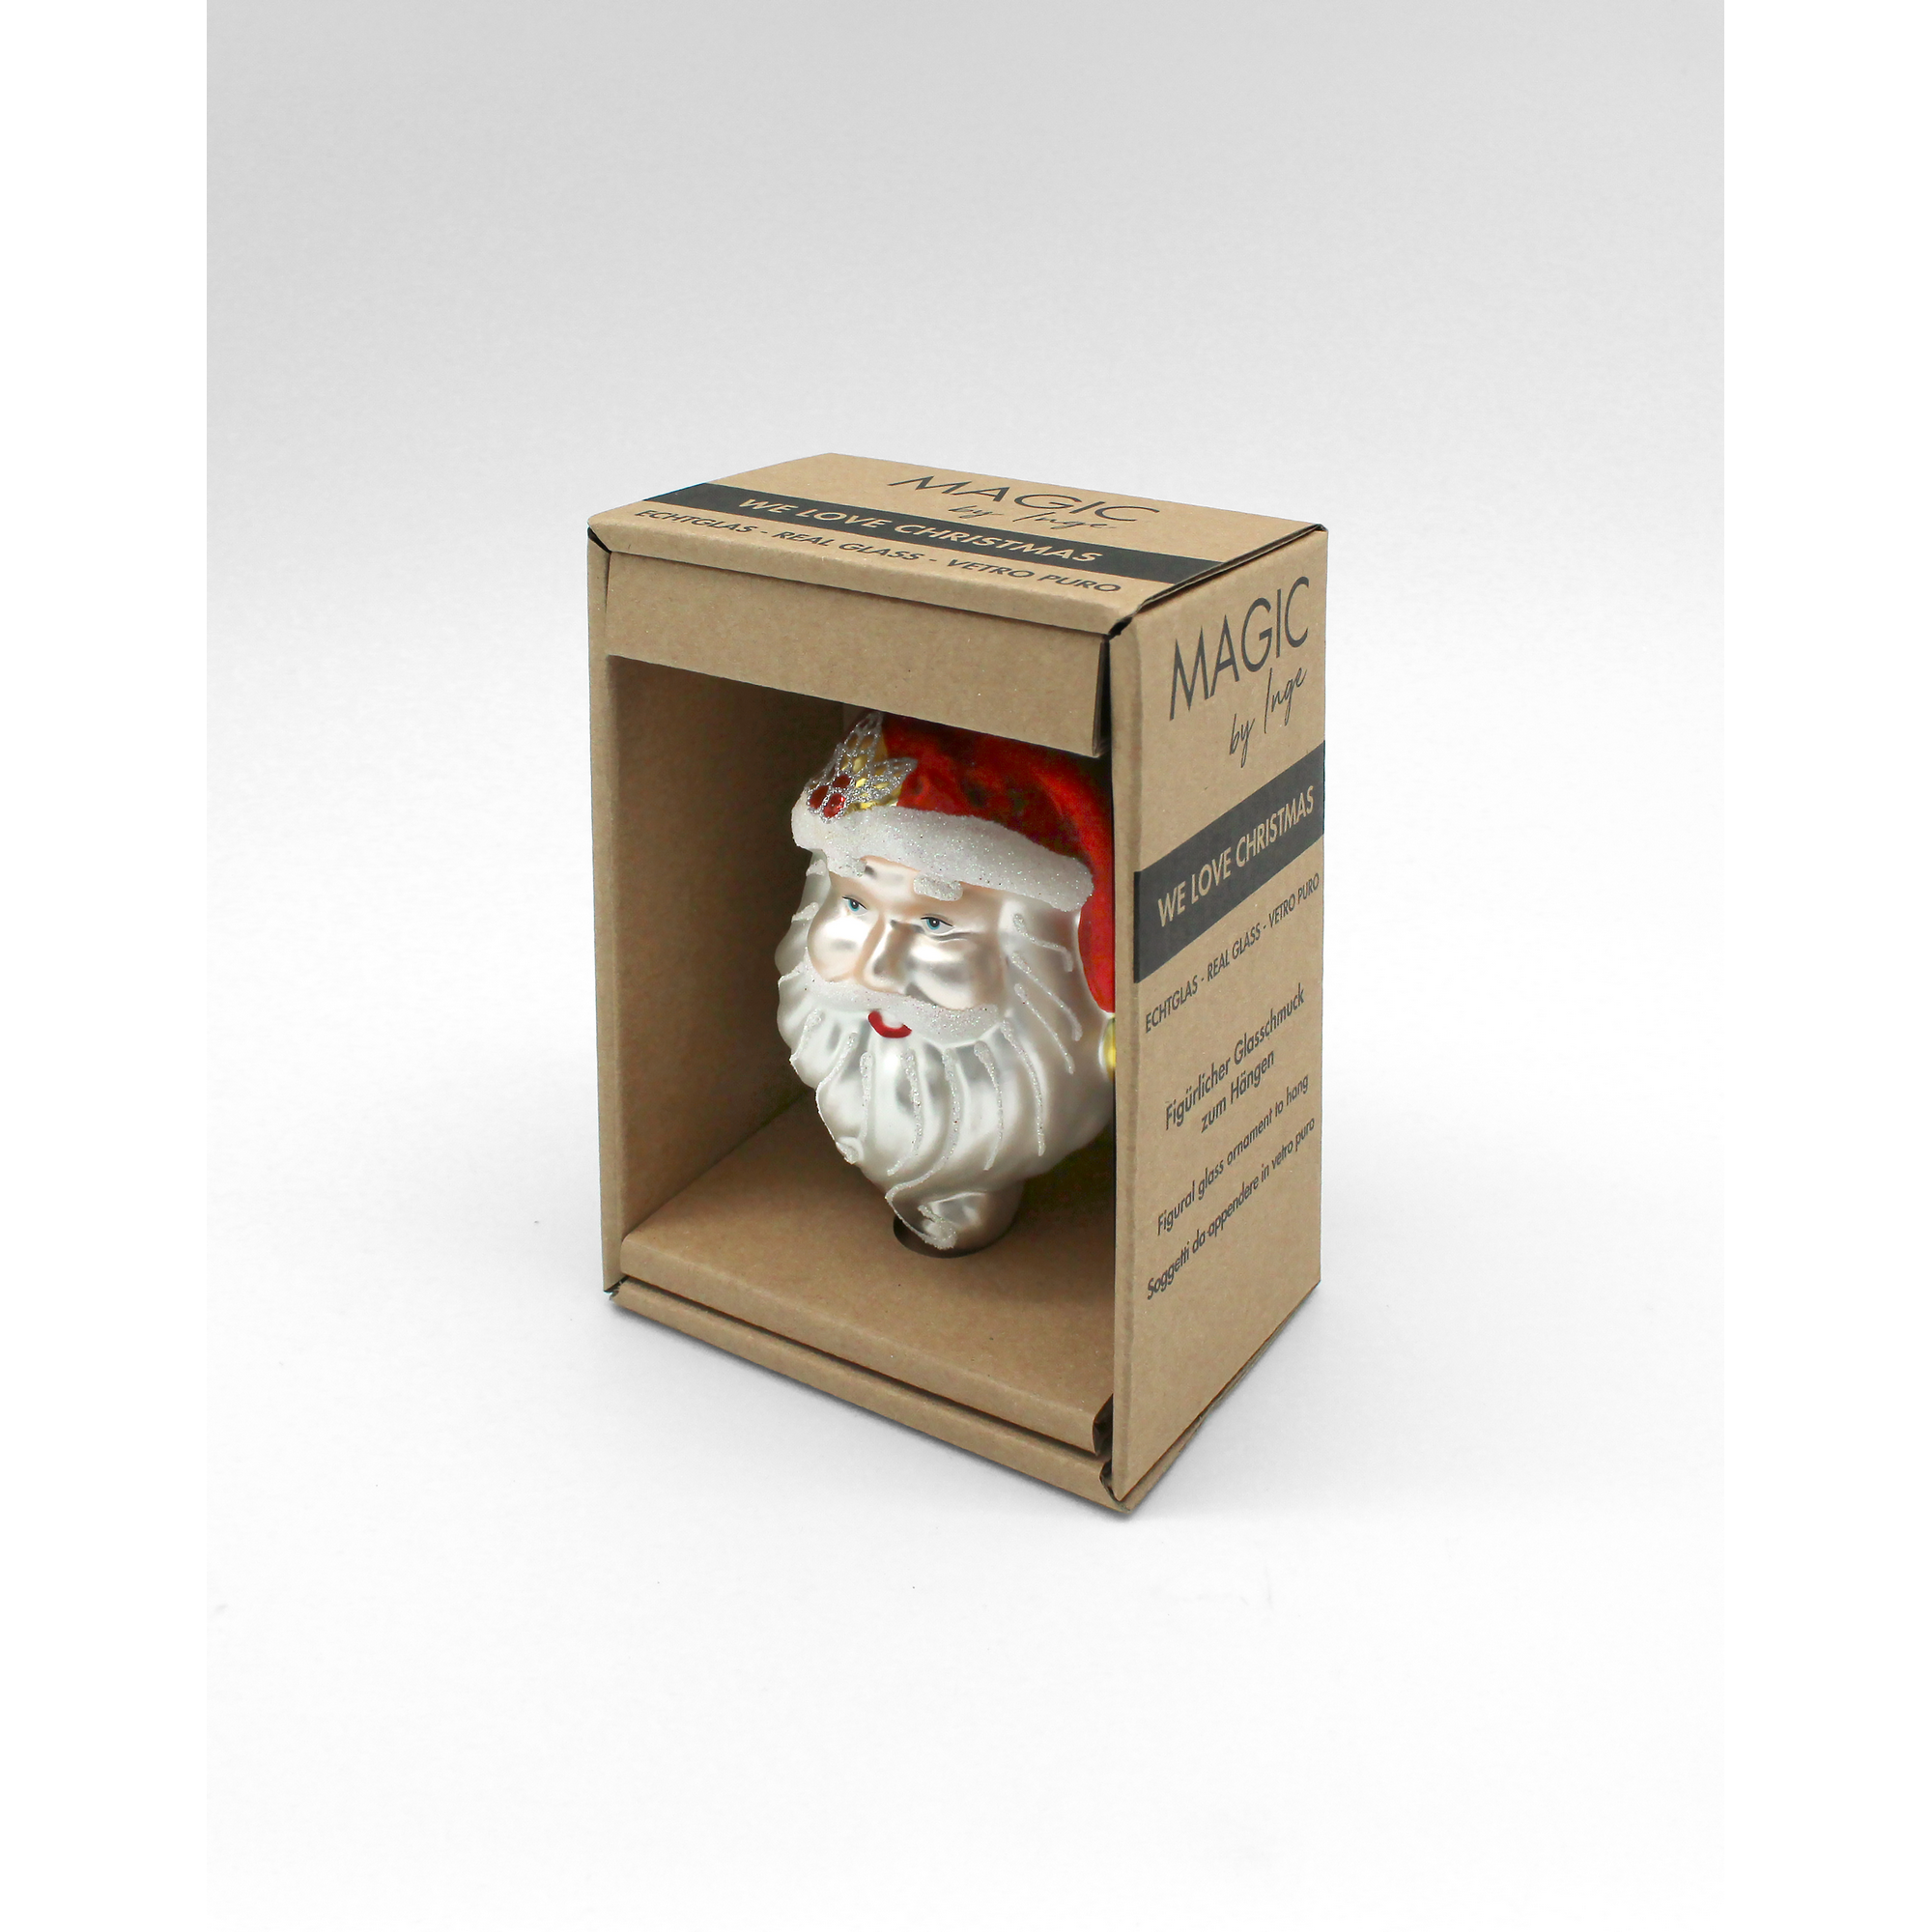 Christbaumschmuck Weihnachtsmann weiß/rot 9,5 cm + product picture